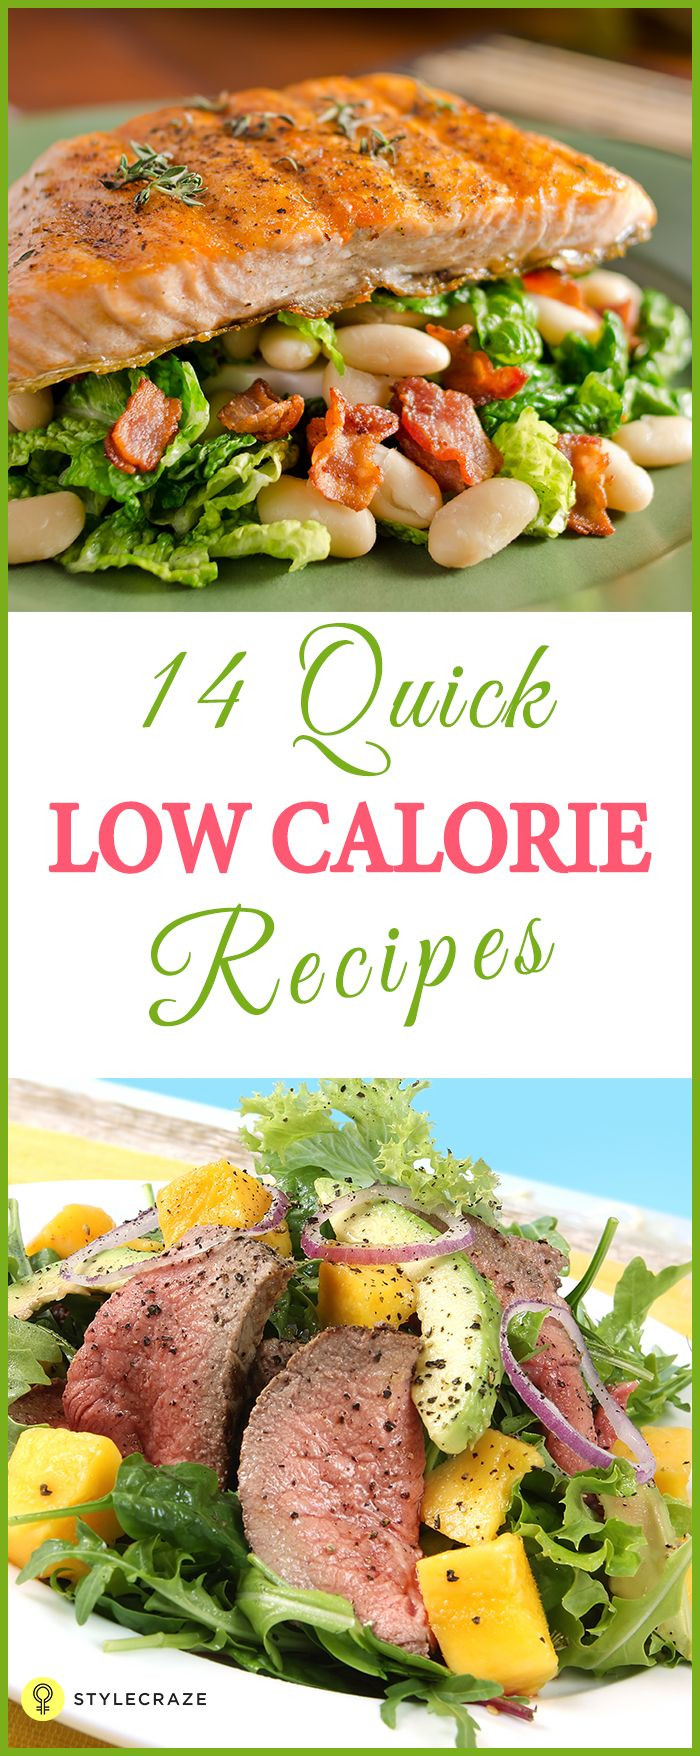 Low Calorie Recipes For Dinner
 616 beste afbeeldingen van Healthy Food